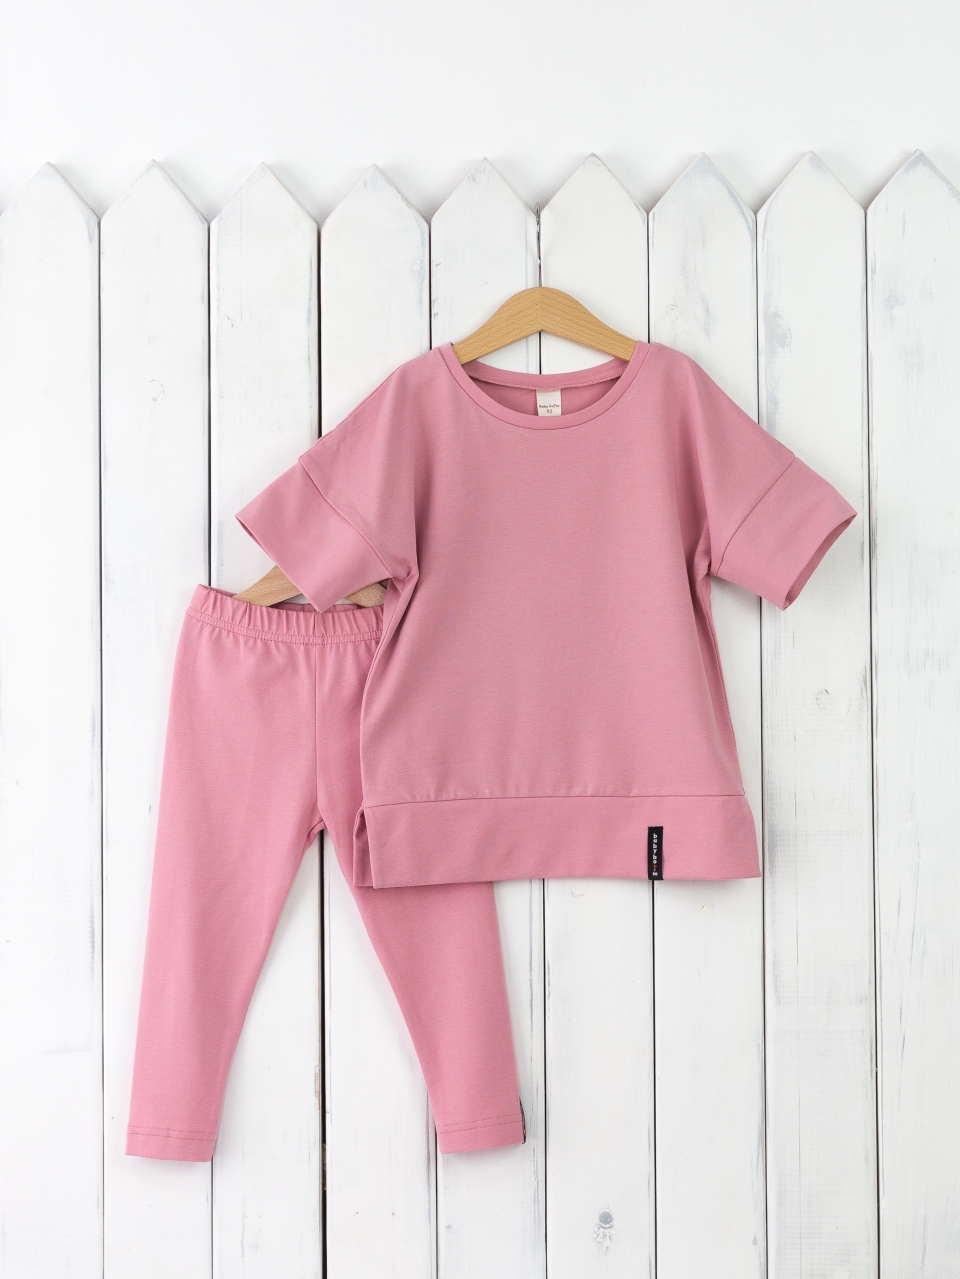 КД352/11-К Комплект для девочки р.98 футболка+легинсы/розовый зефир Бэби Бум - Пенза 